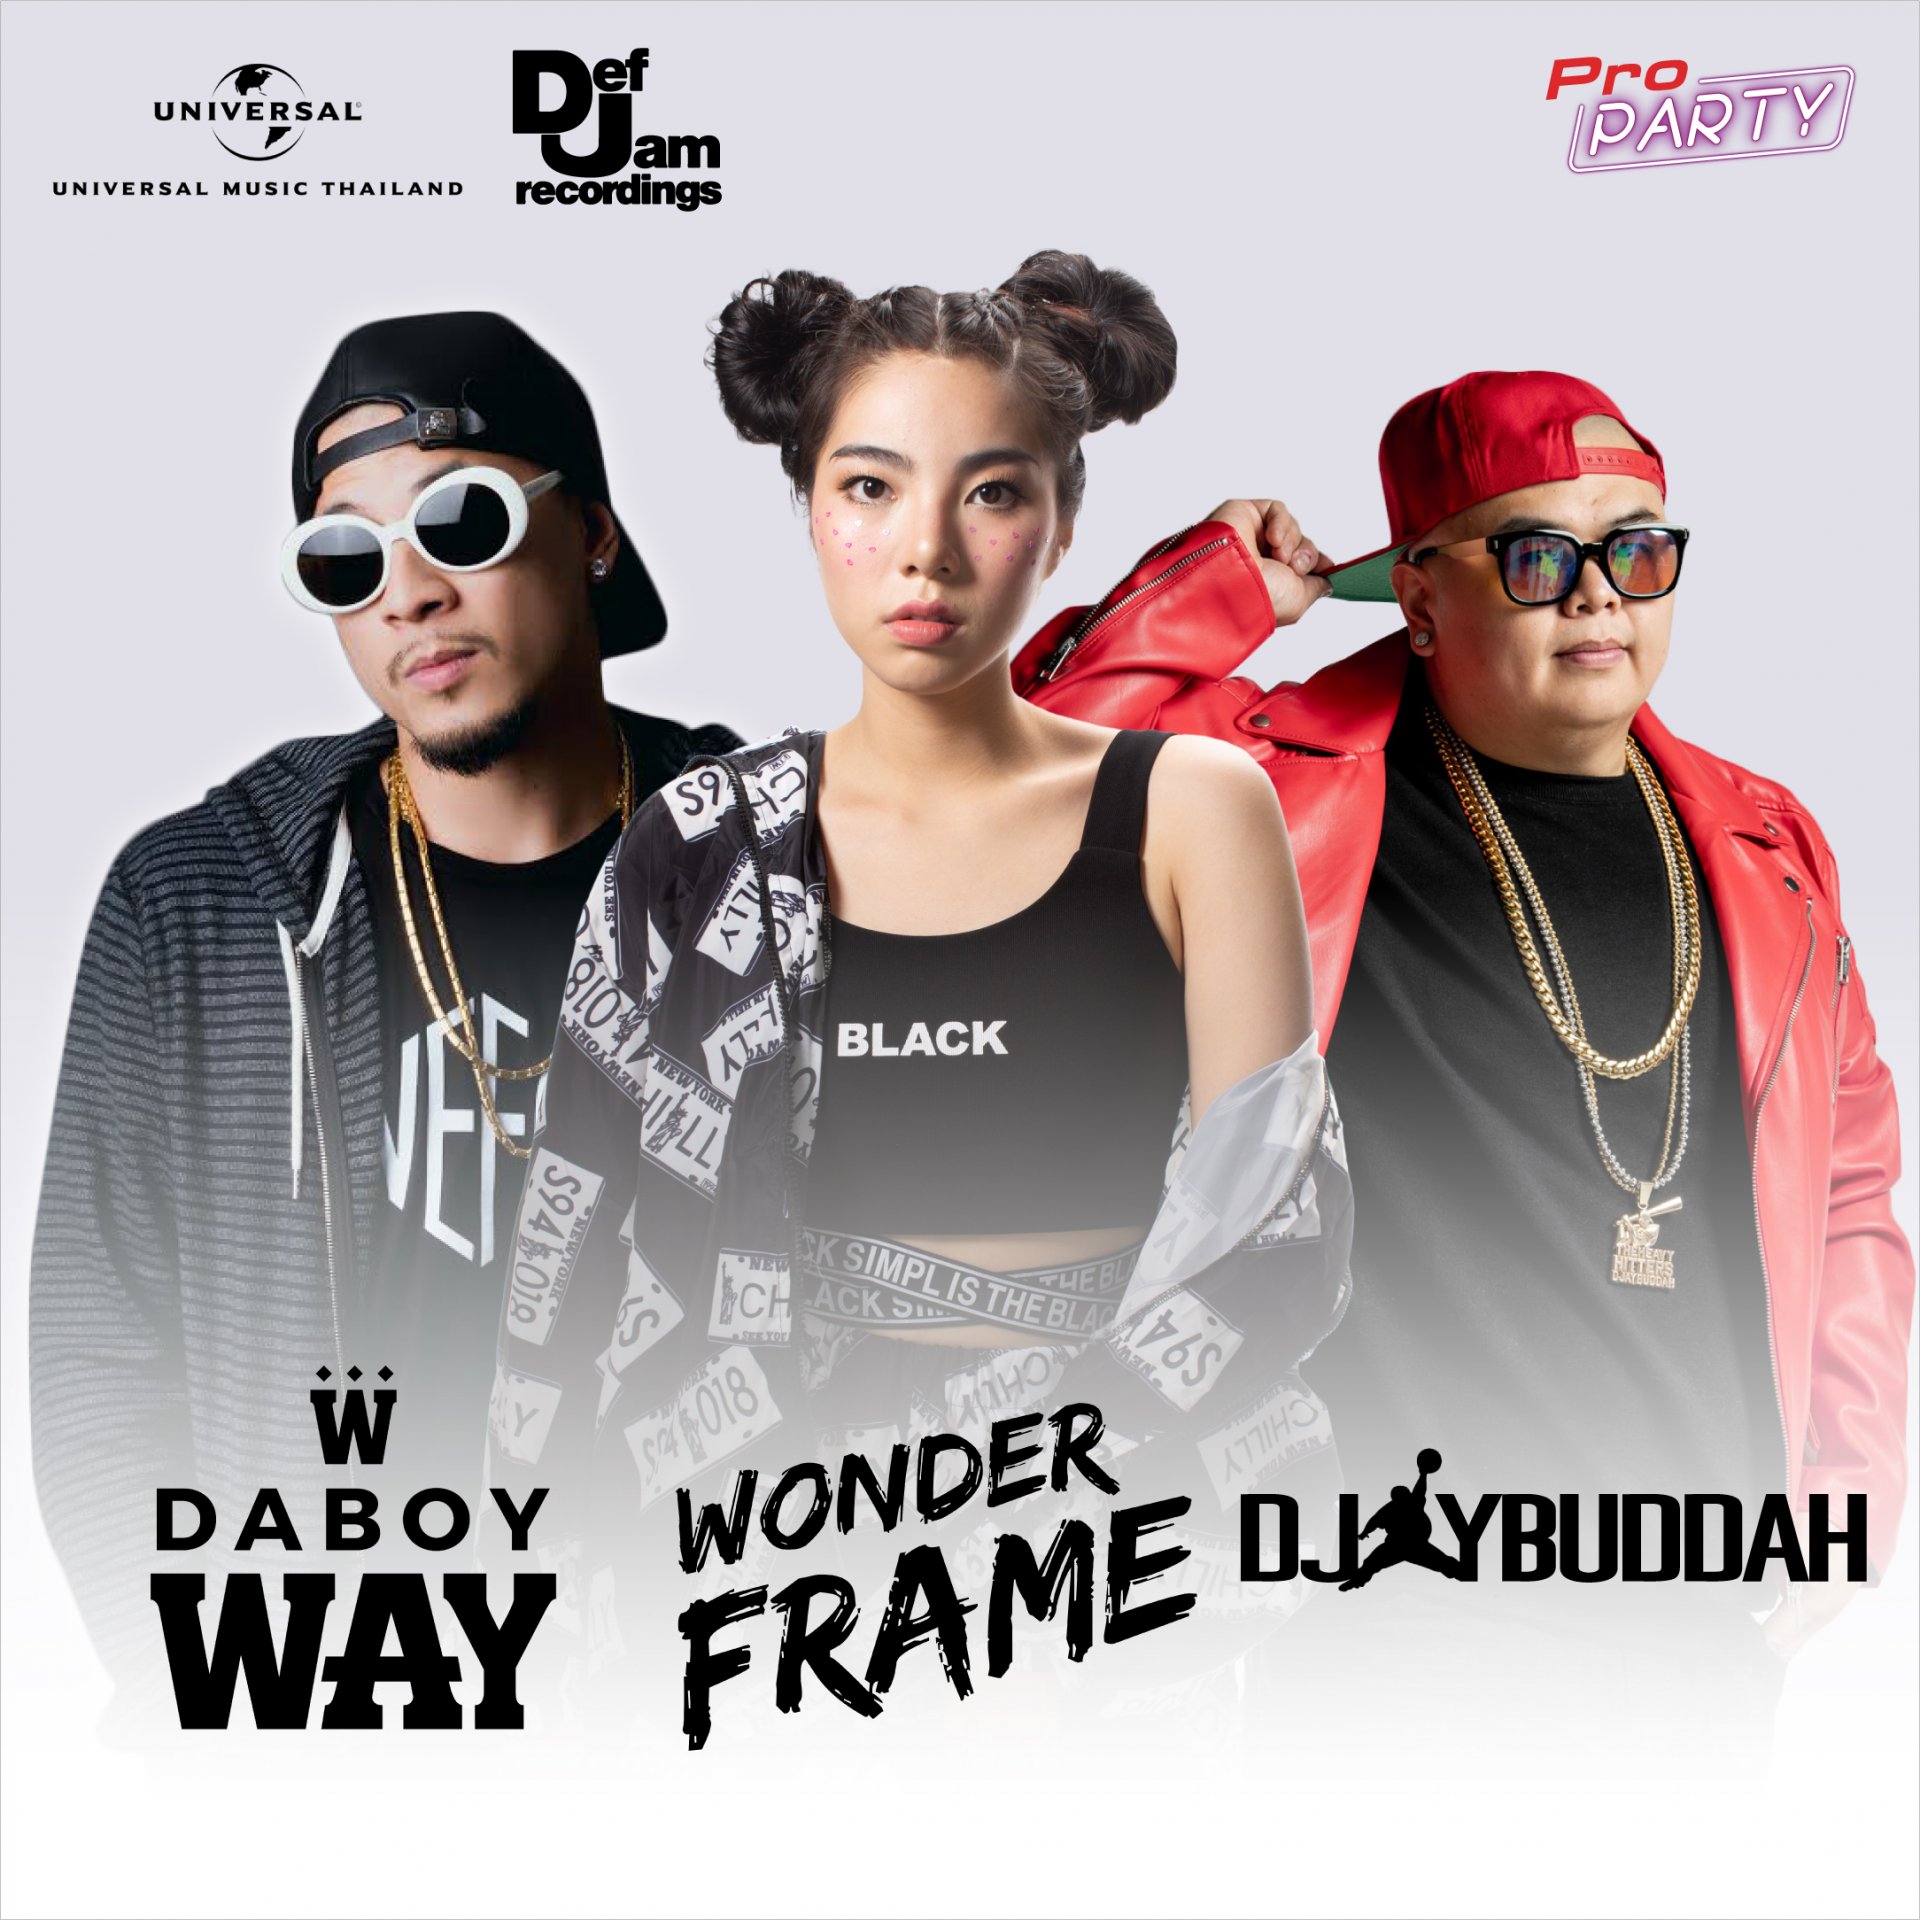 DABOY WAY + Wonderframe + DJ Budda